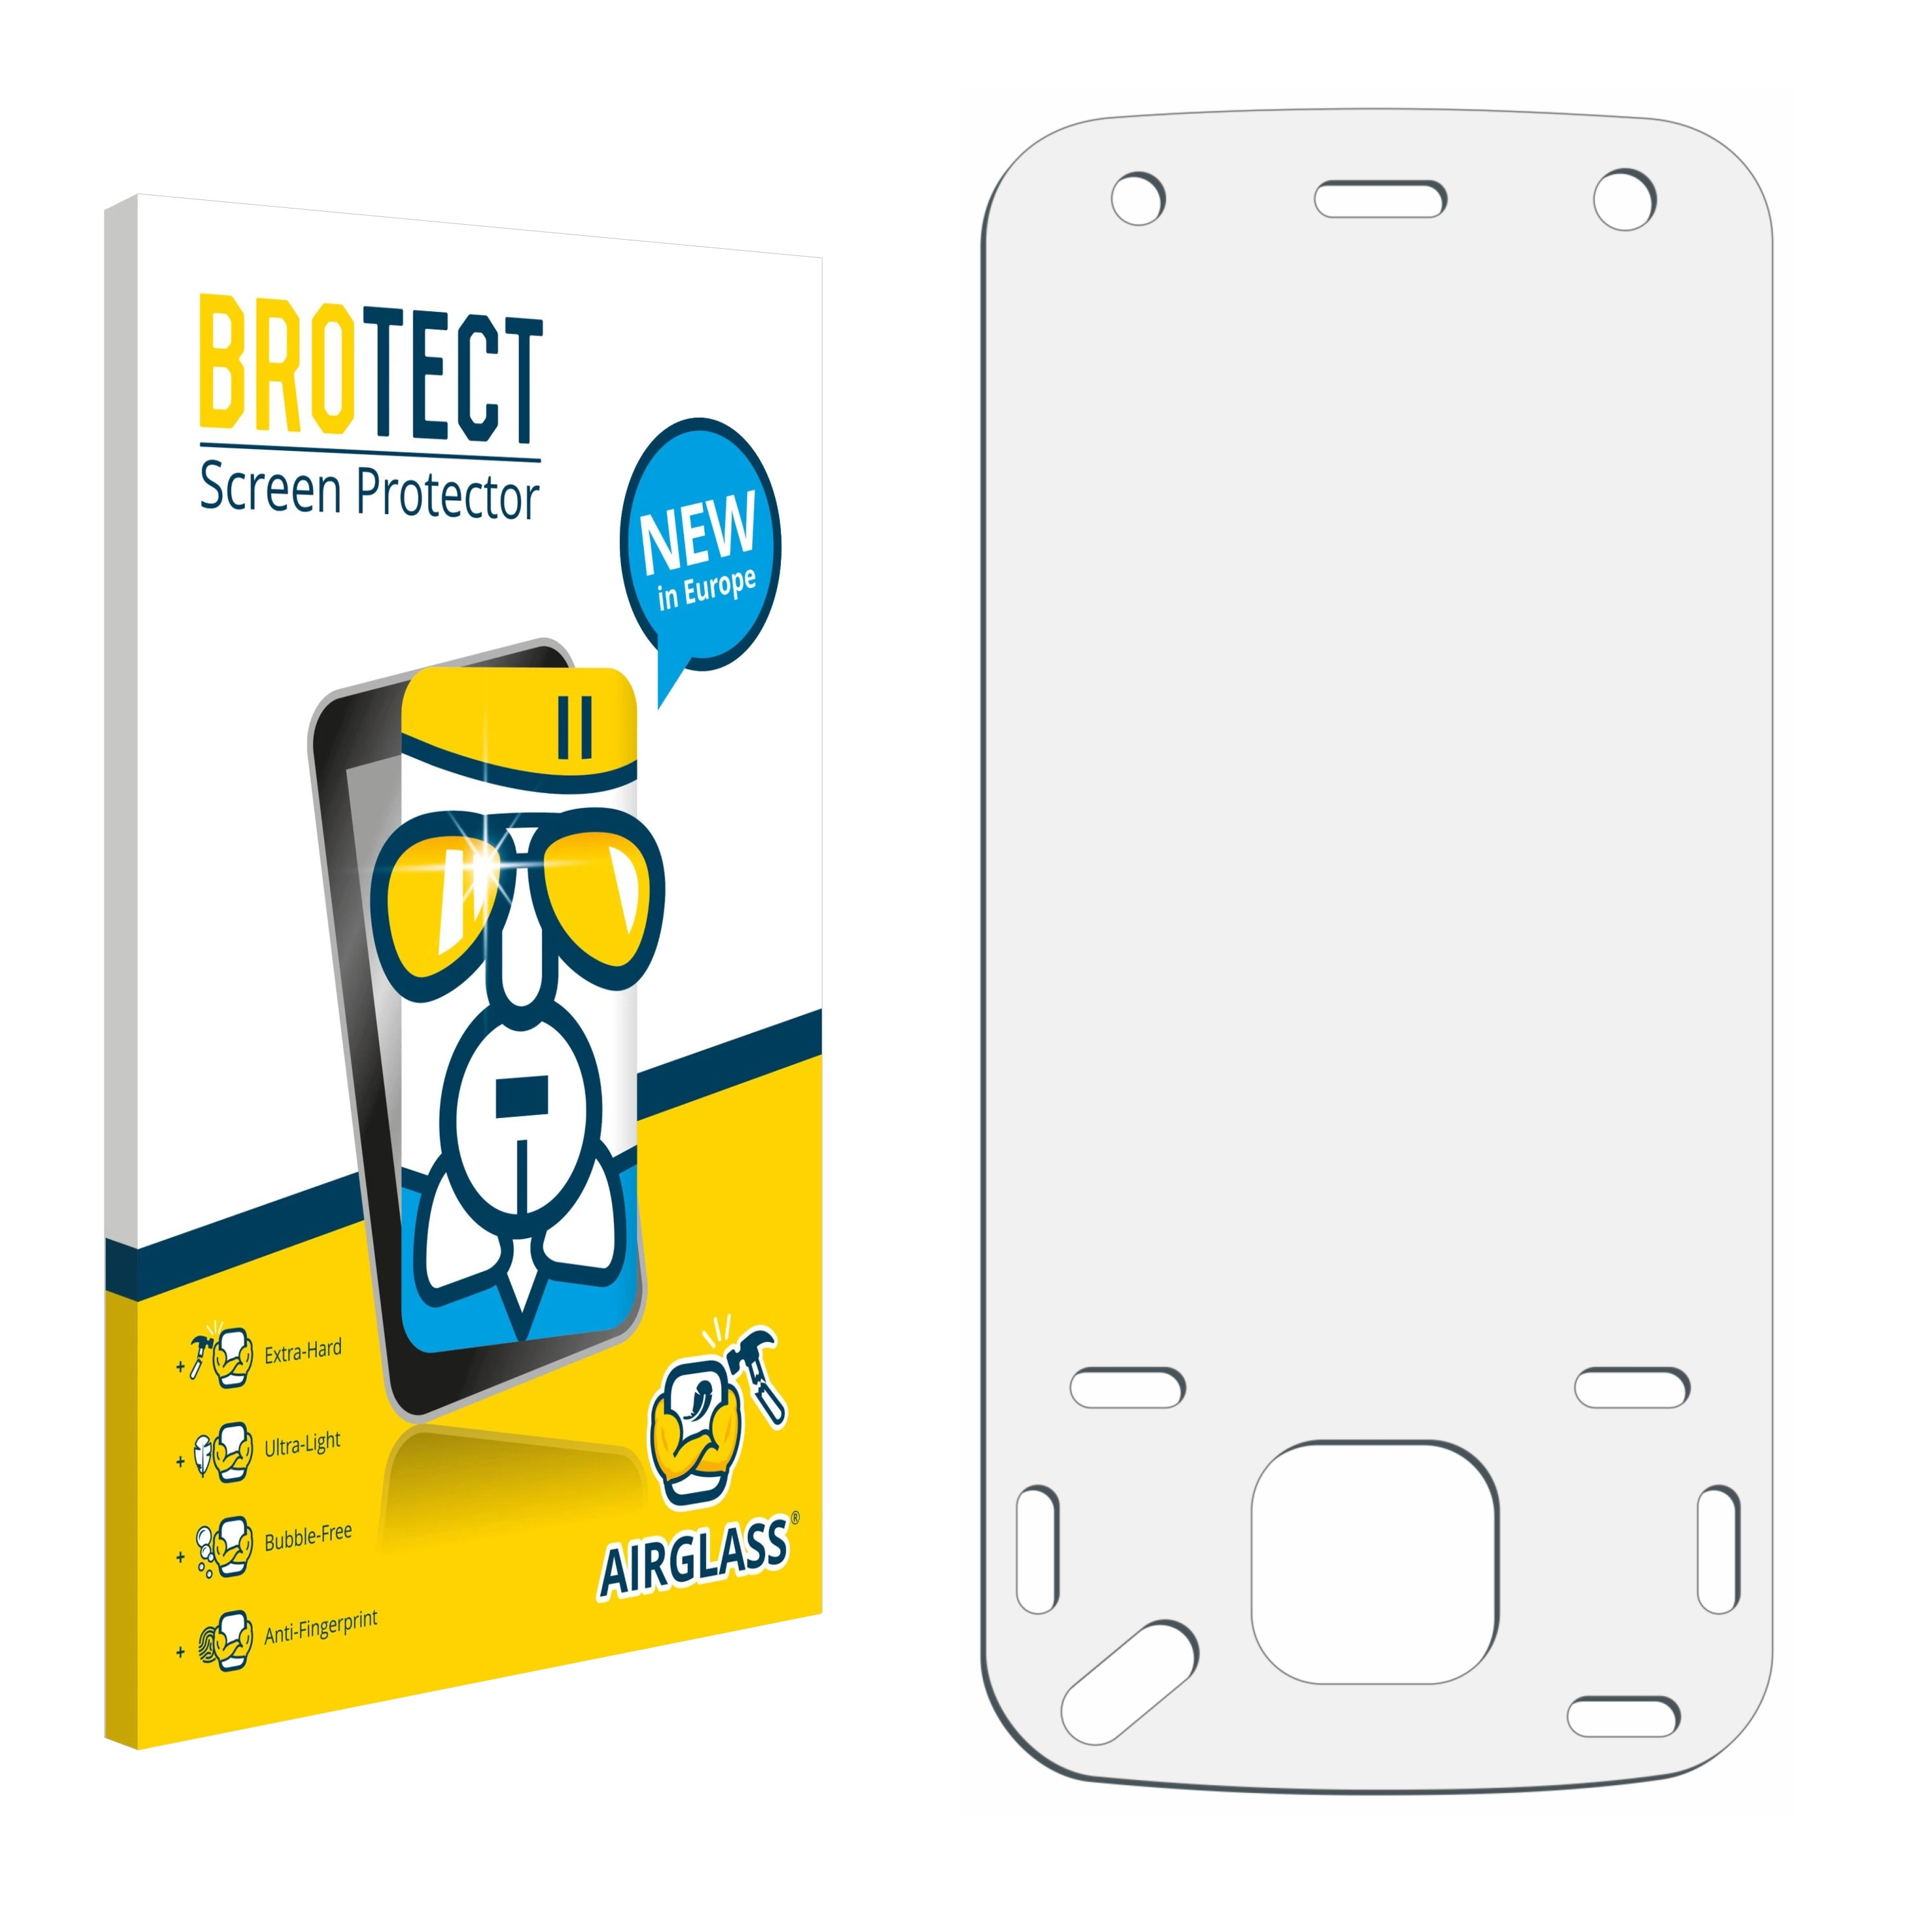 2x lámina protectora BROTECT para Nokia n86 8MP lámina protectora de pantalla transparente 